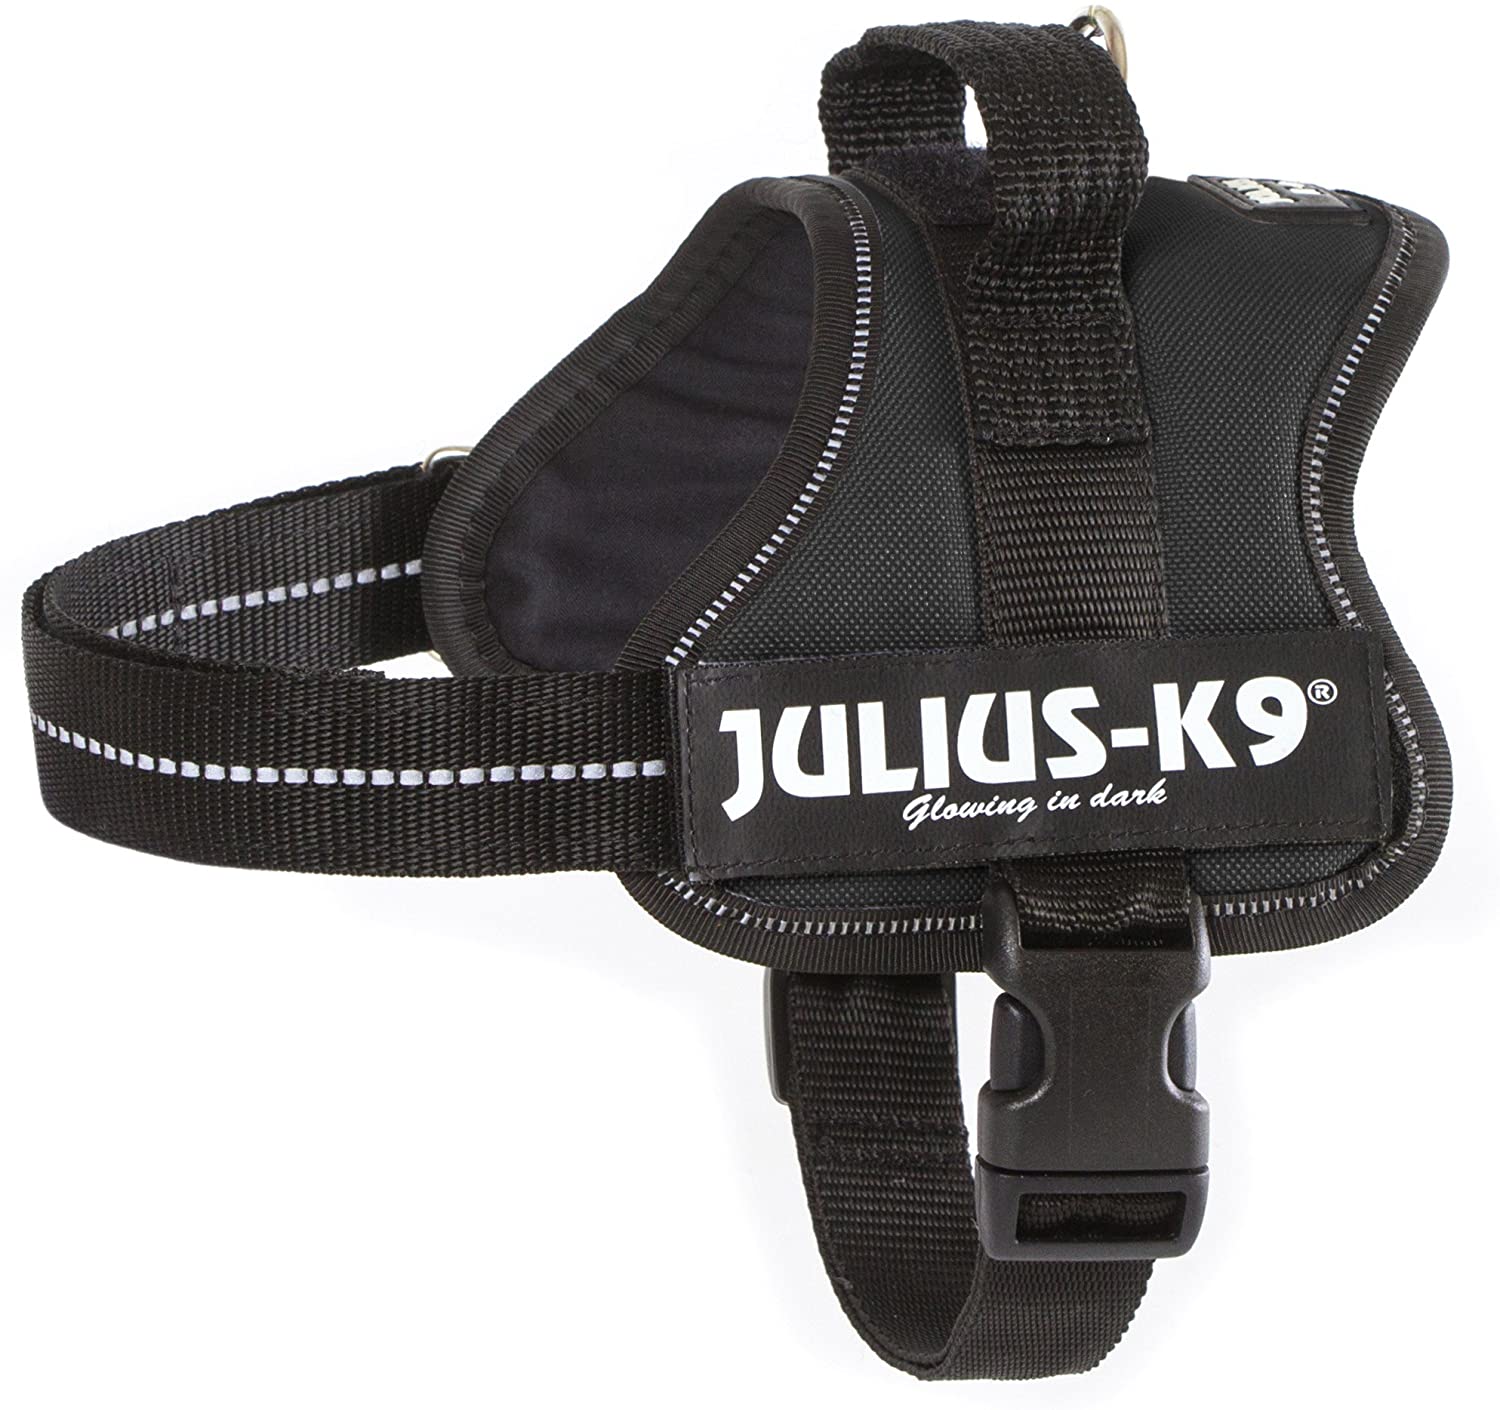  Julius-K9 Mini, 51-67 cm, Negro 